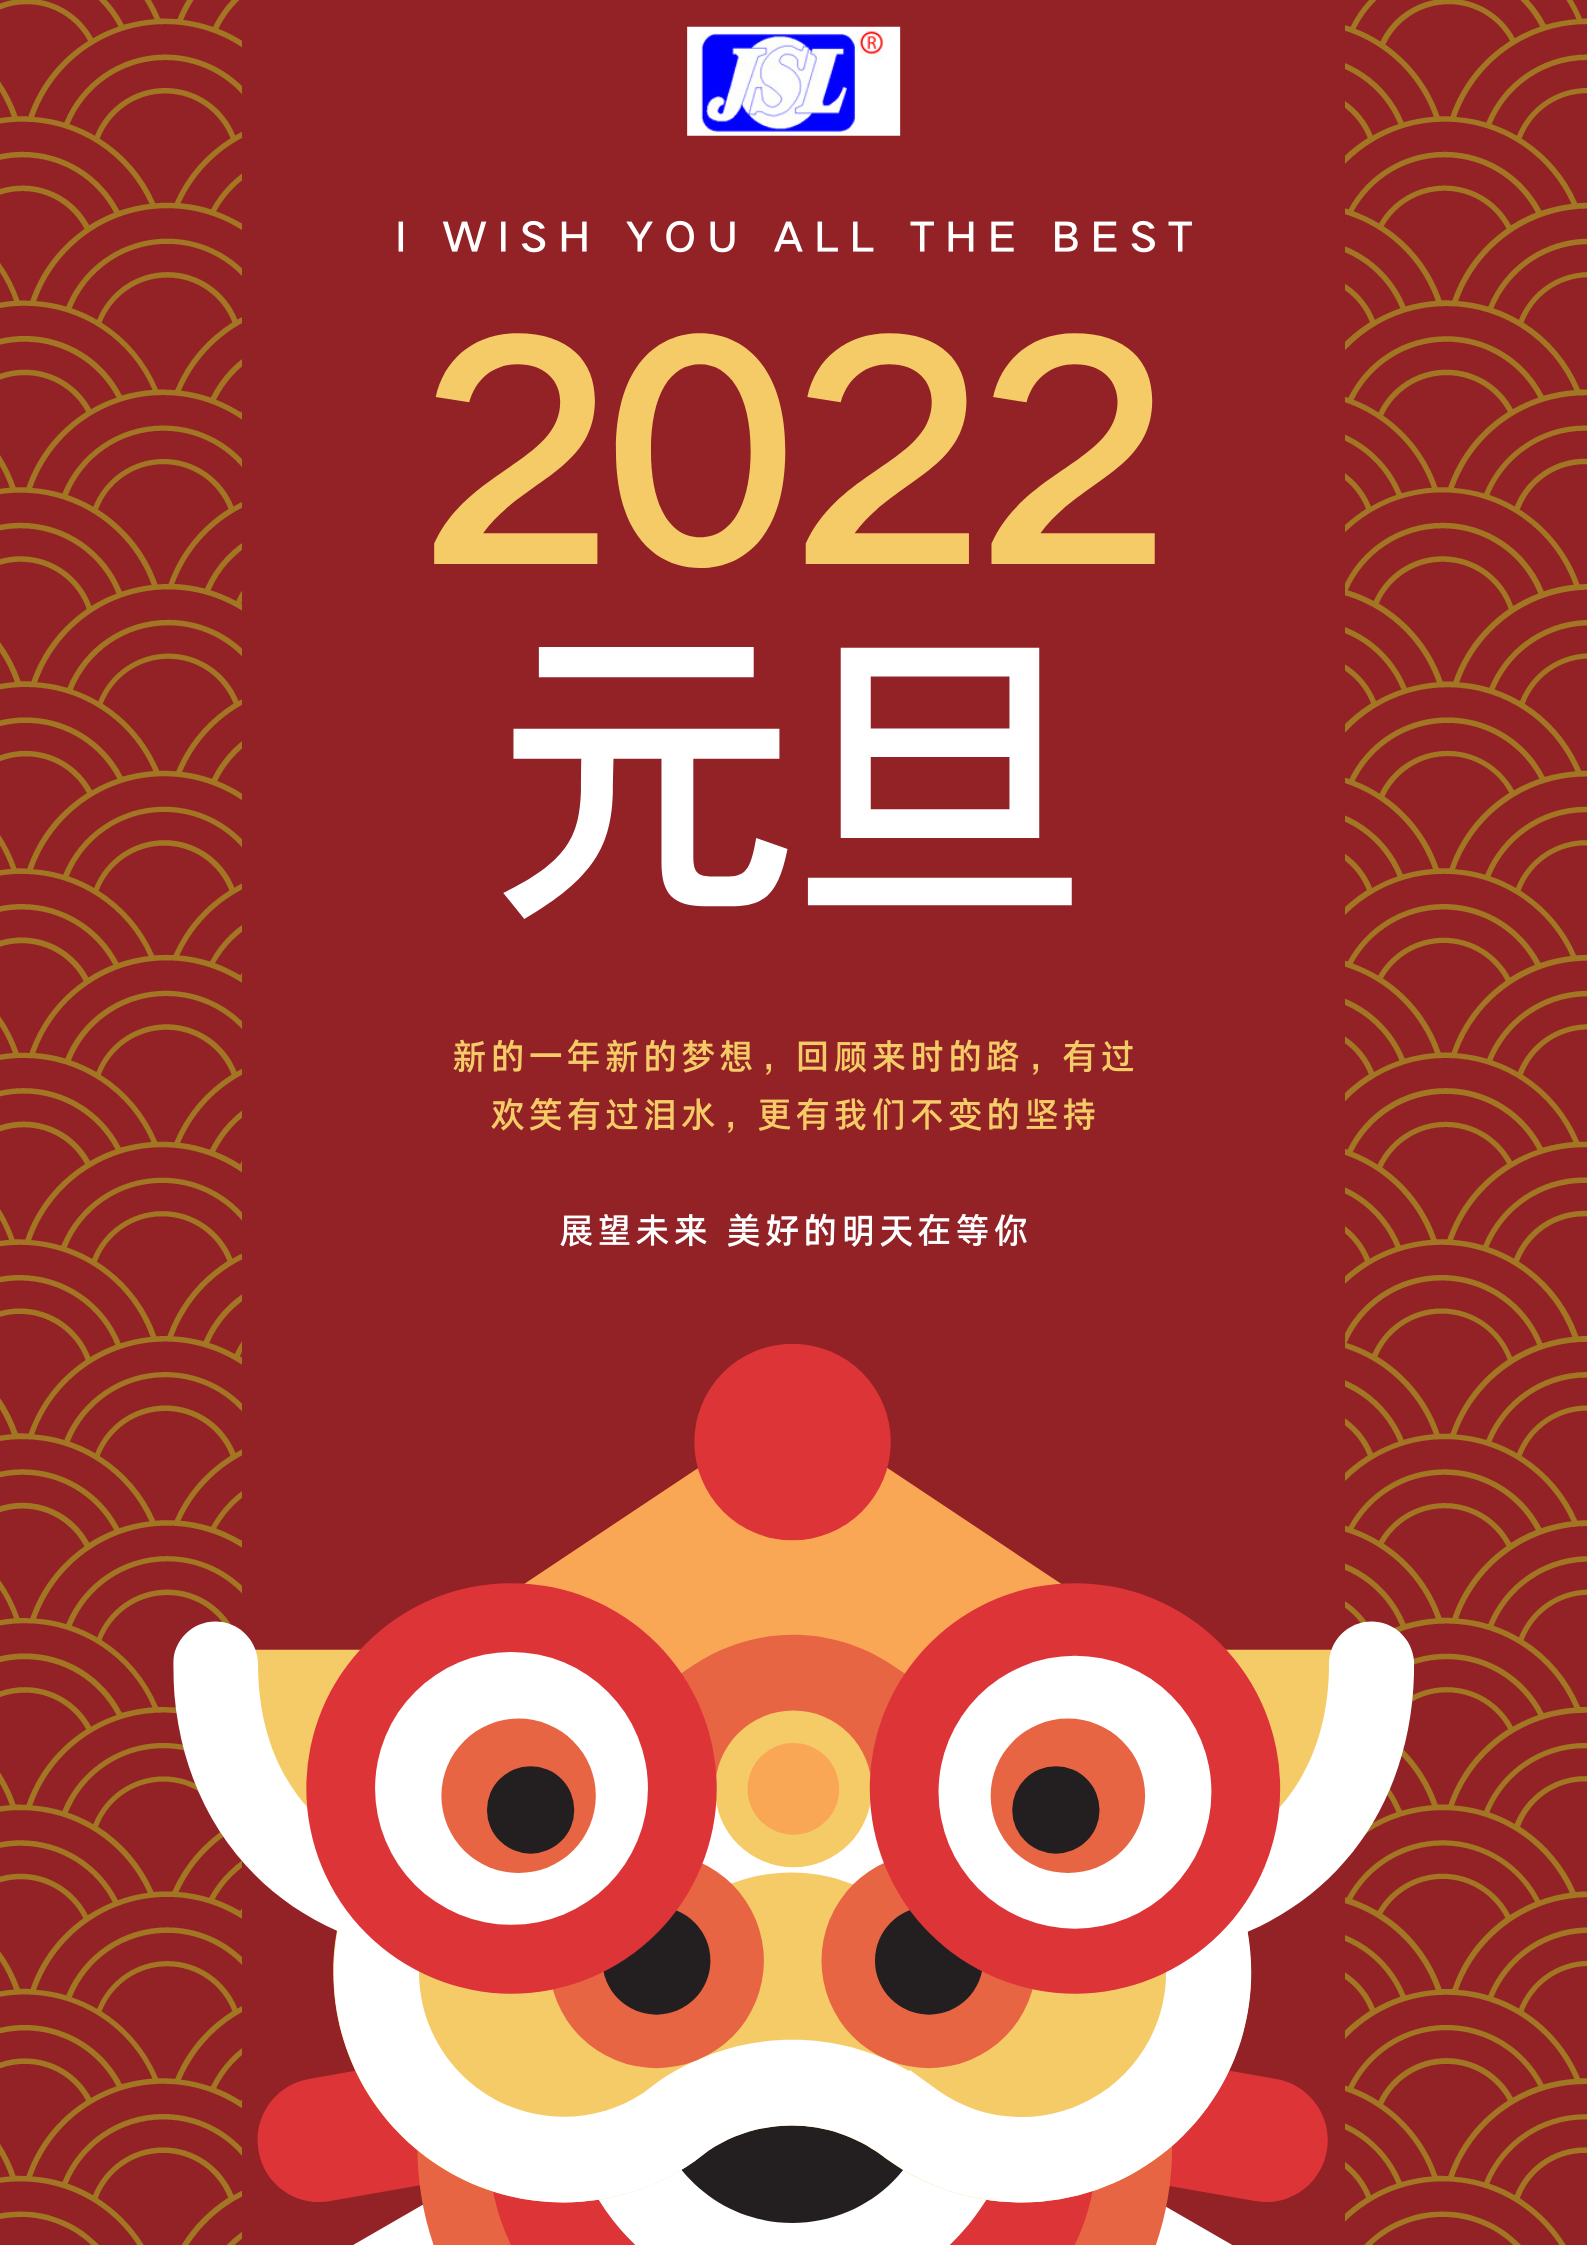 江山来祝广大客户2022元旦快乐！